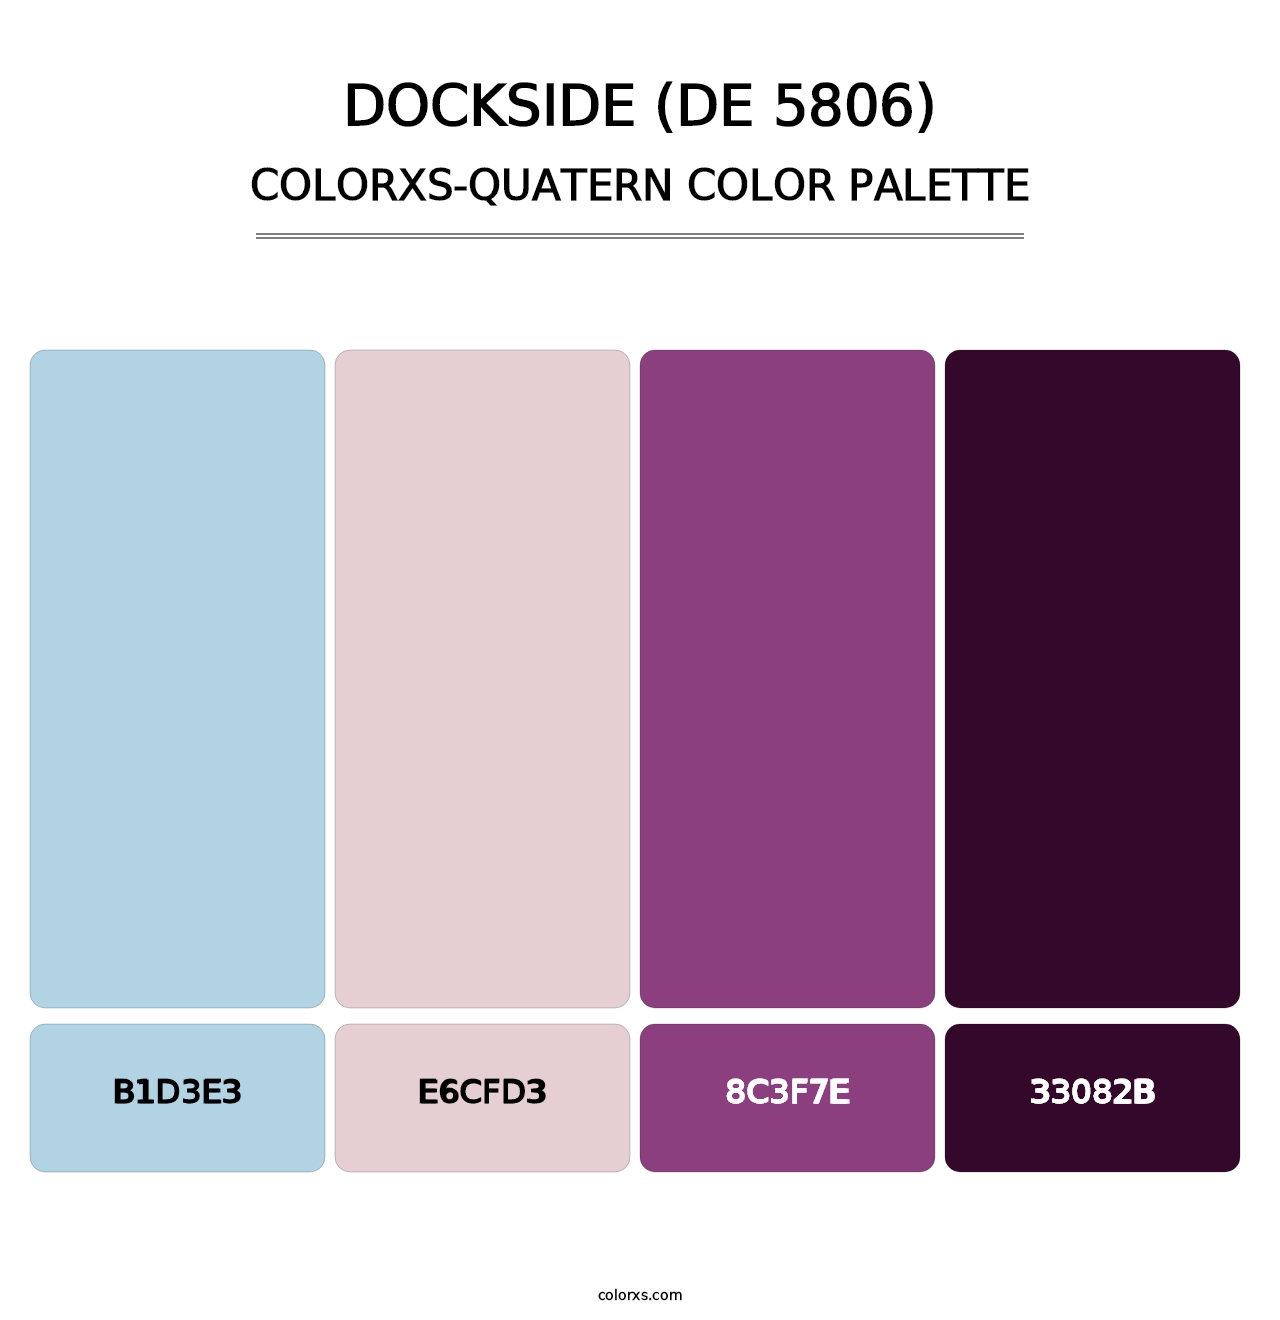 Dockside (DE 5806) - Colorxs Quatern Palette